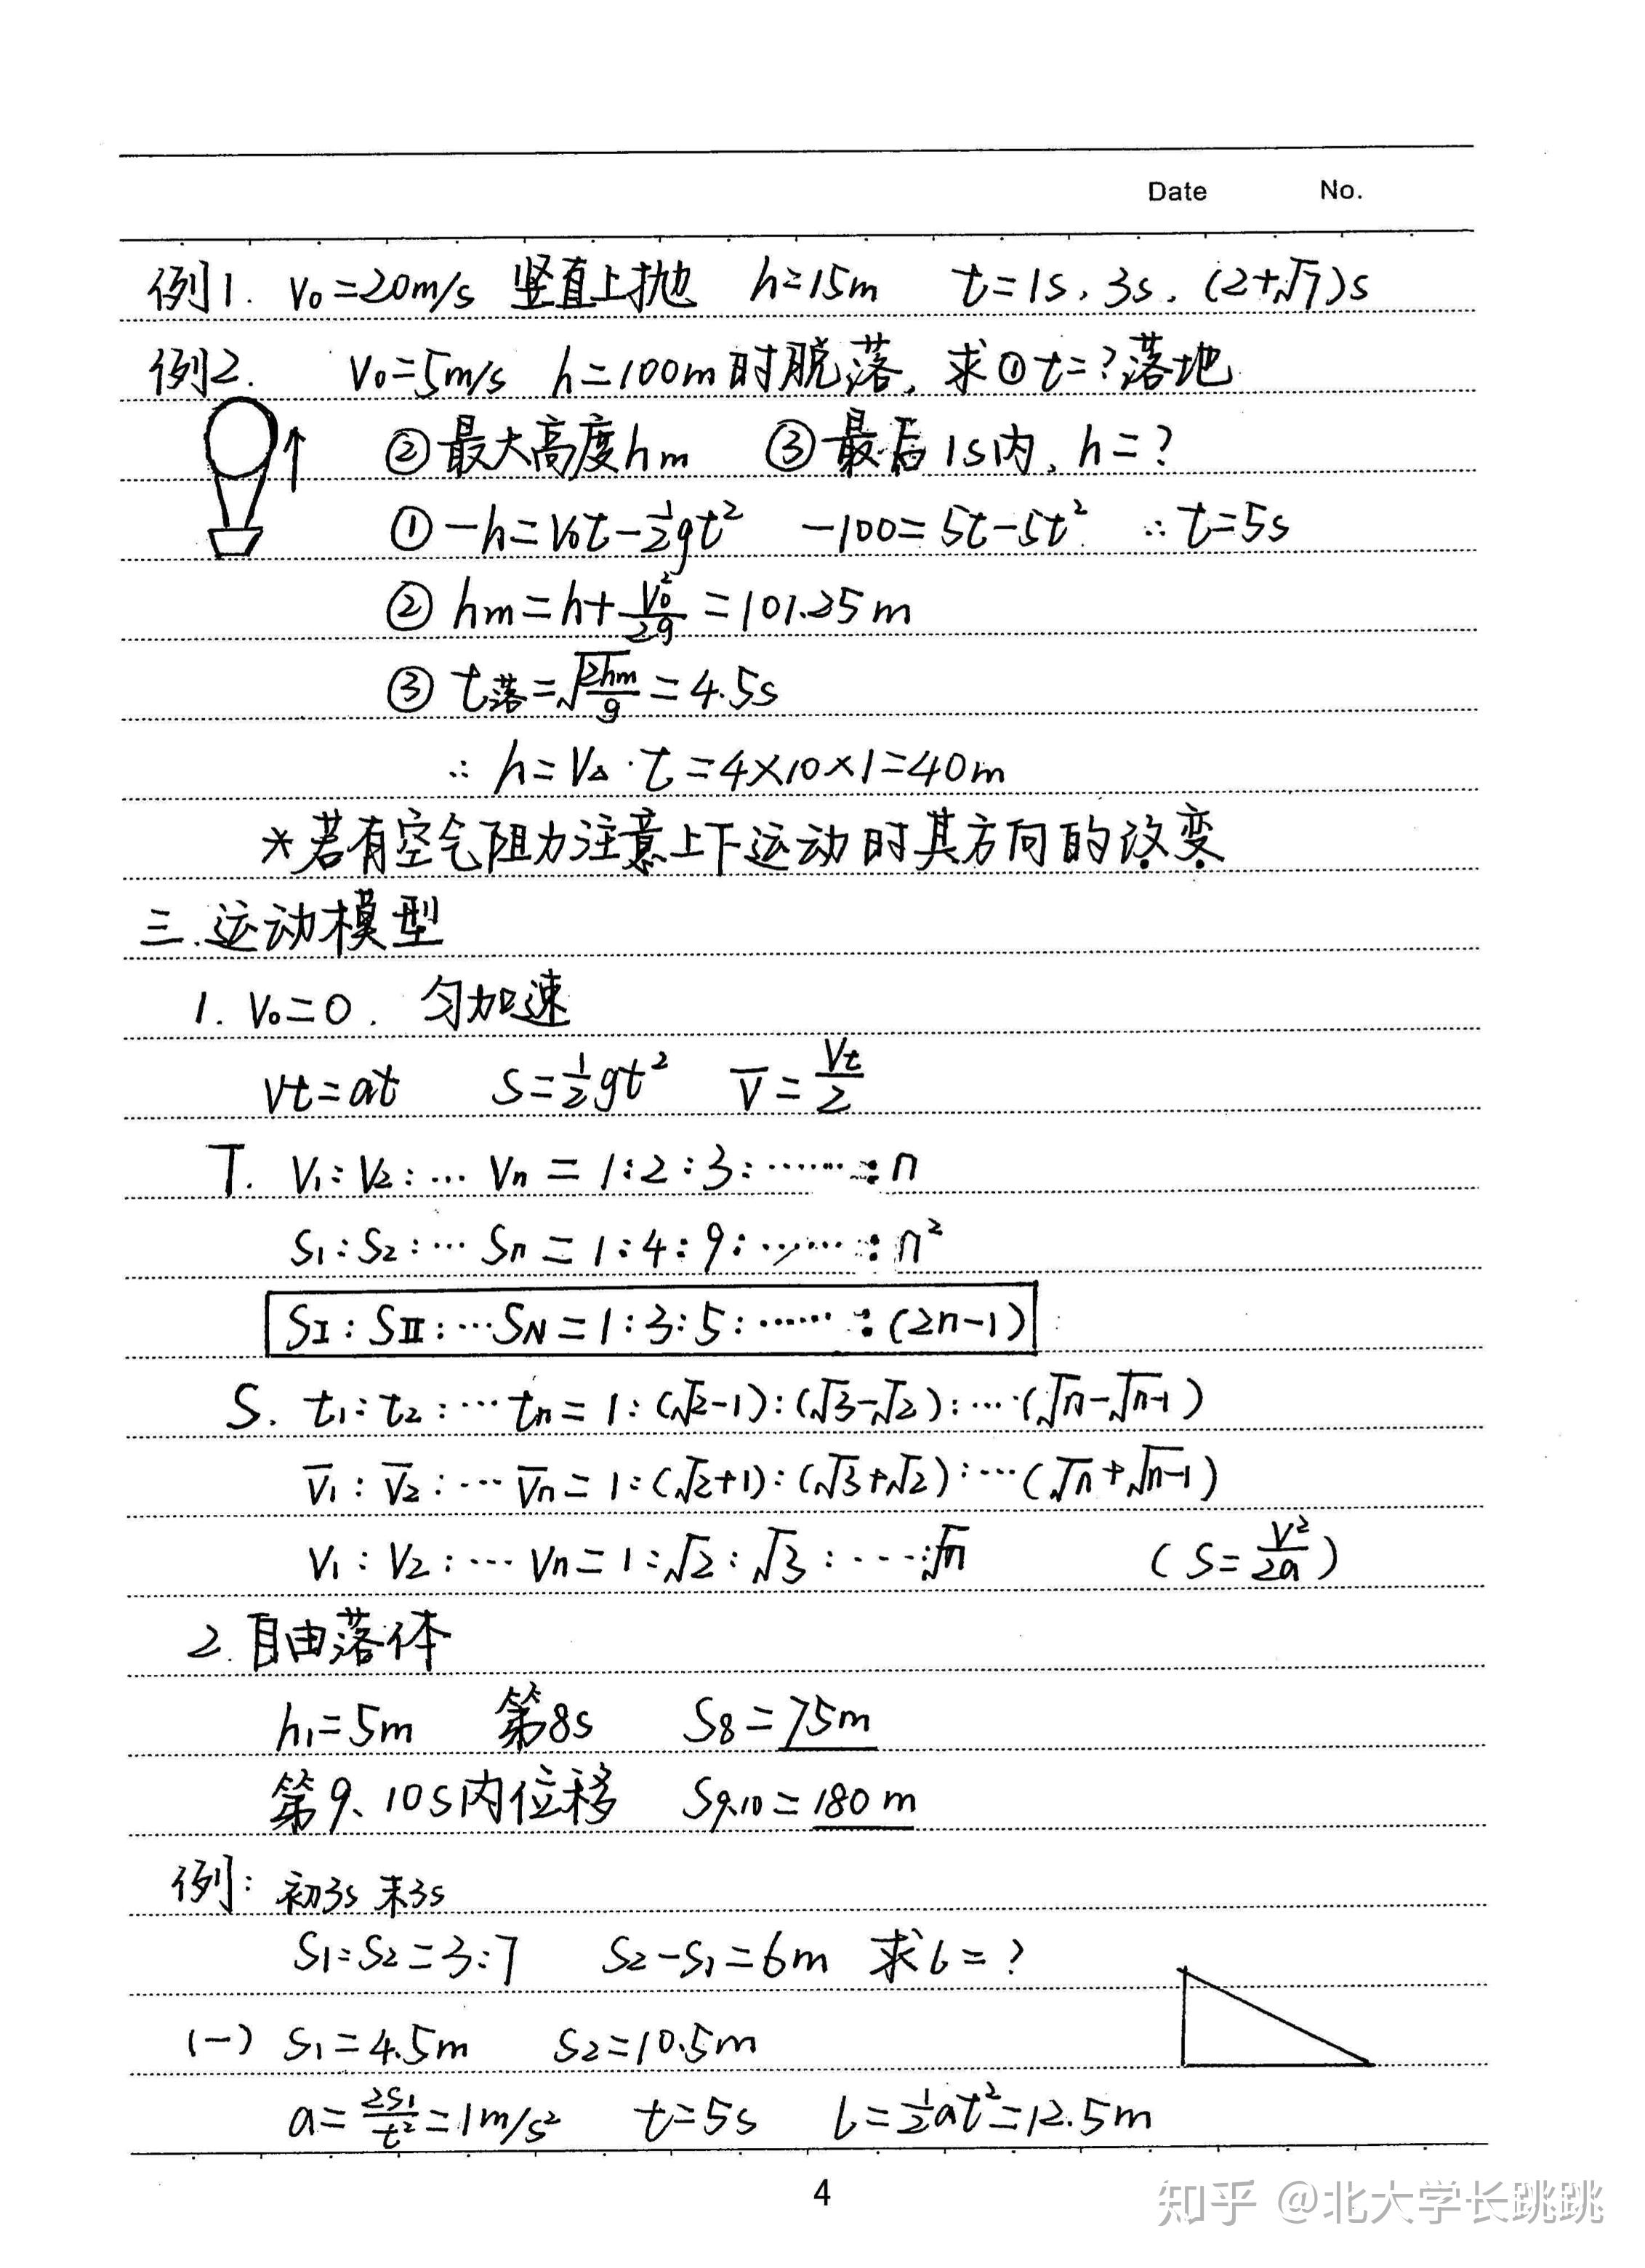 高考学霸高三物理手写笔记分享:第一章